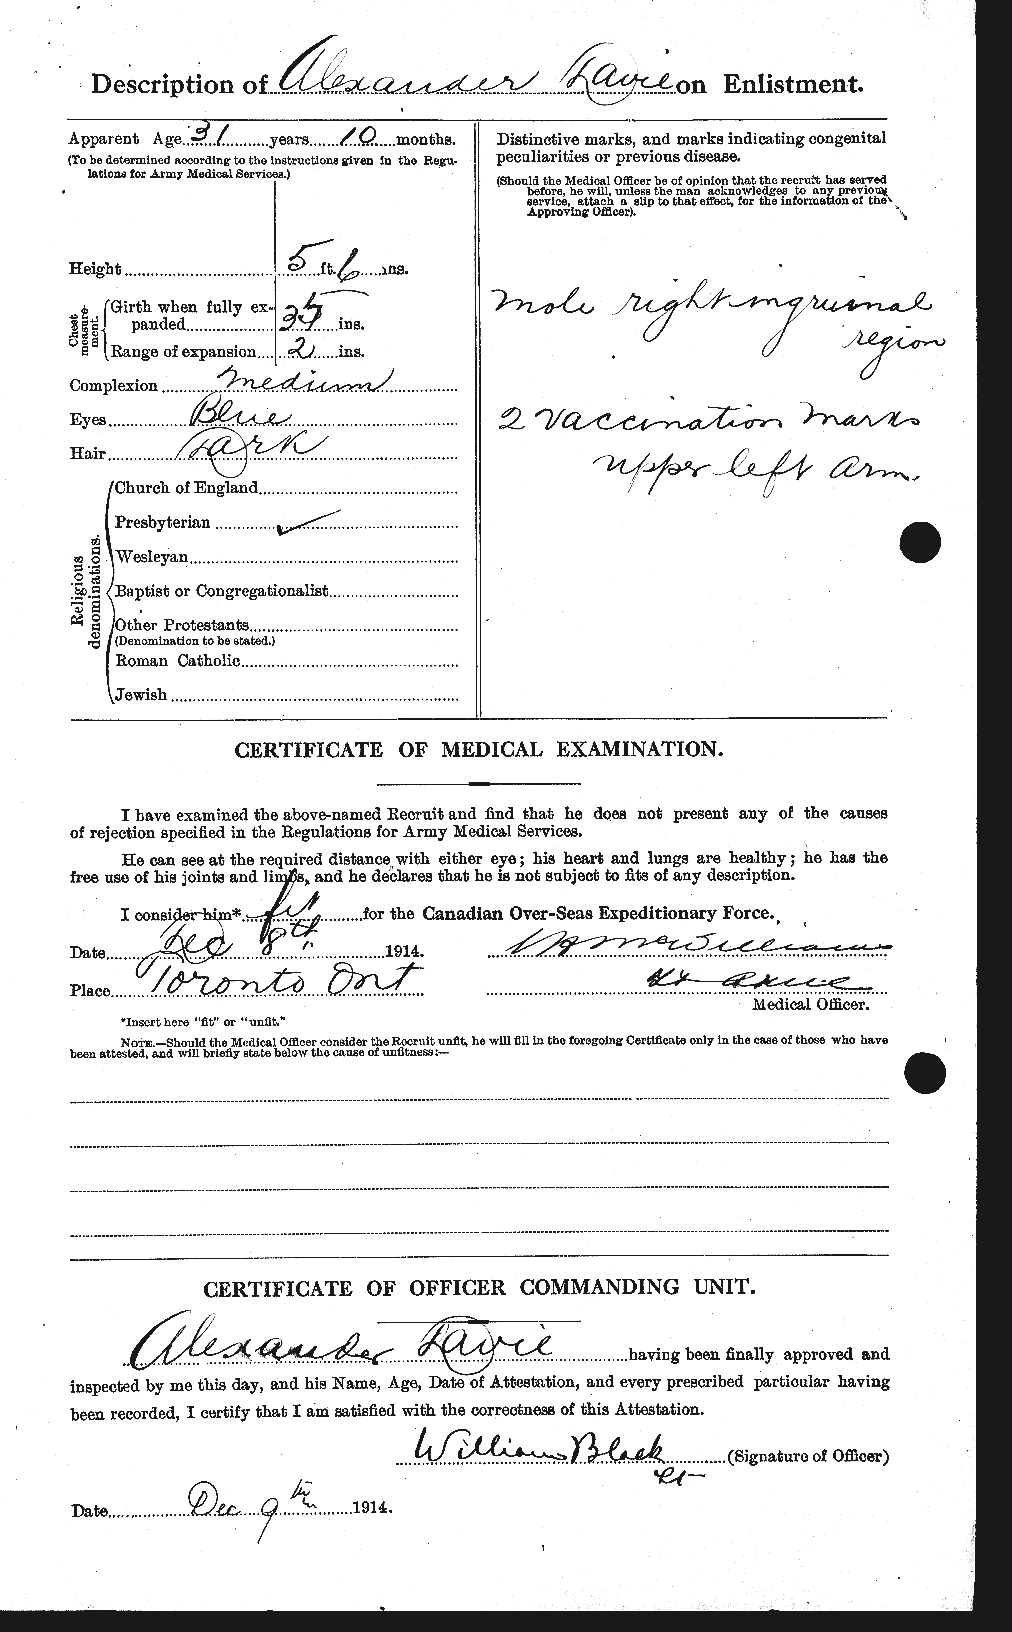 Dossiers du Personnel de la Première Guerre mondiale - CEC 278807b